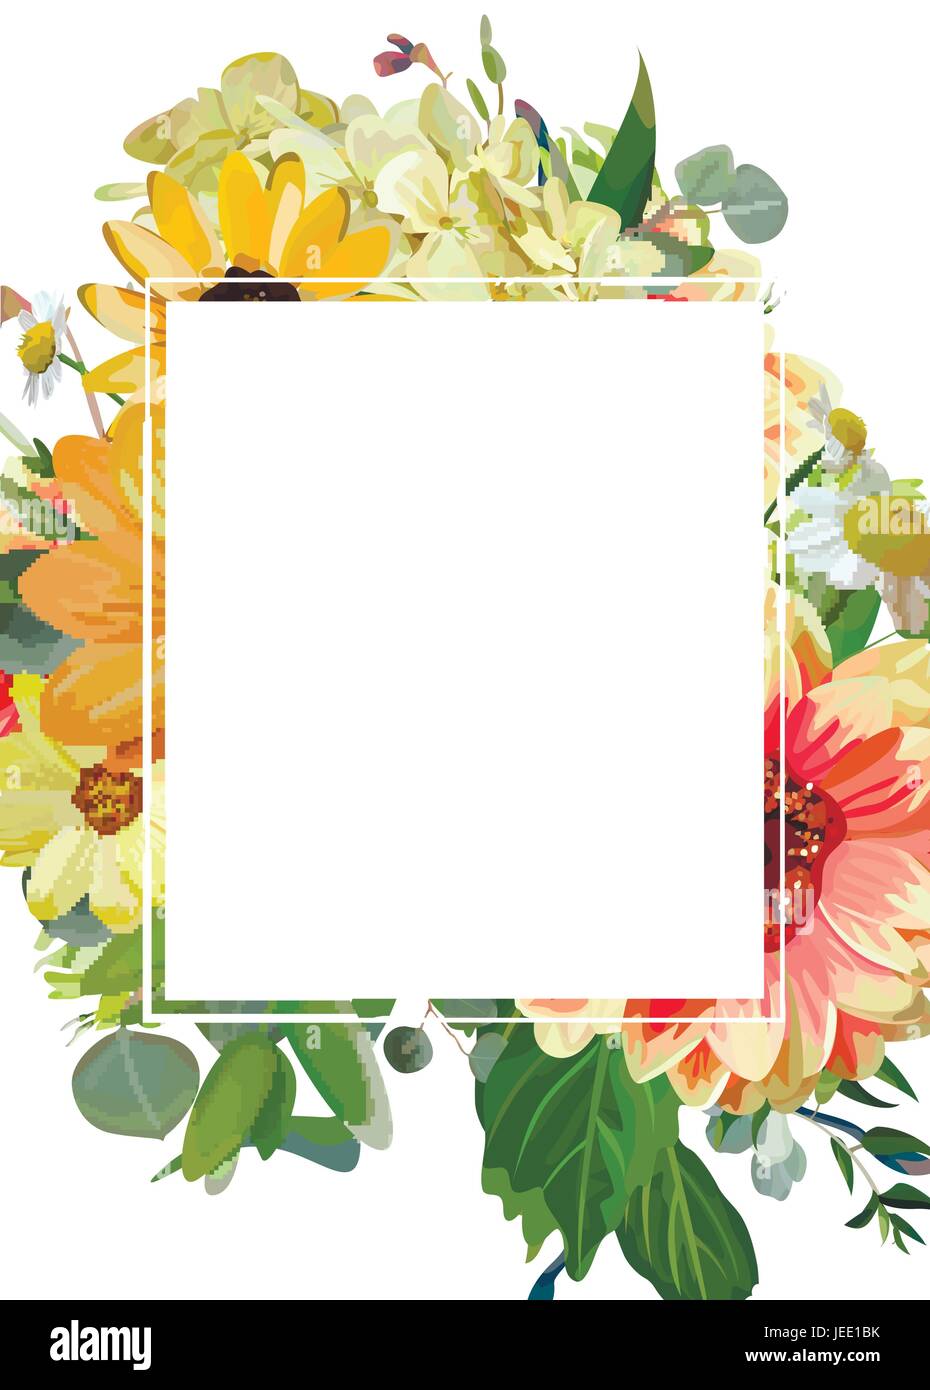 Vector Design vertikale Karte rechteckige Textfreiraum. Gelbe Sonnenblumen Hortensie Kosmos Blumen, Dahlie Daisy, Eukalyptus Blätter Blumenrahmen. Ele Stock Vektor